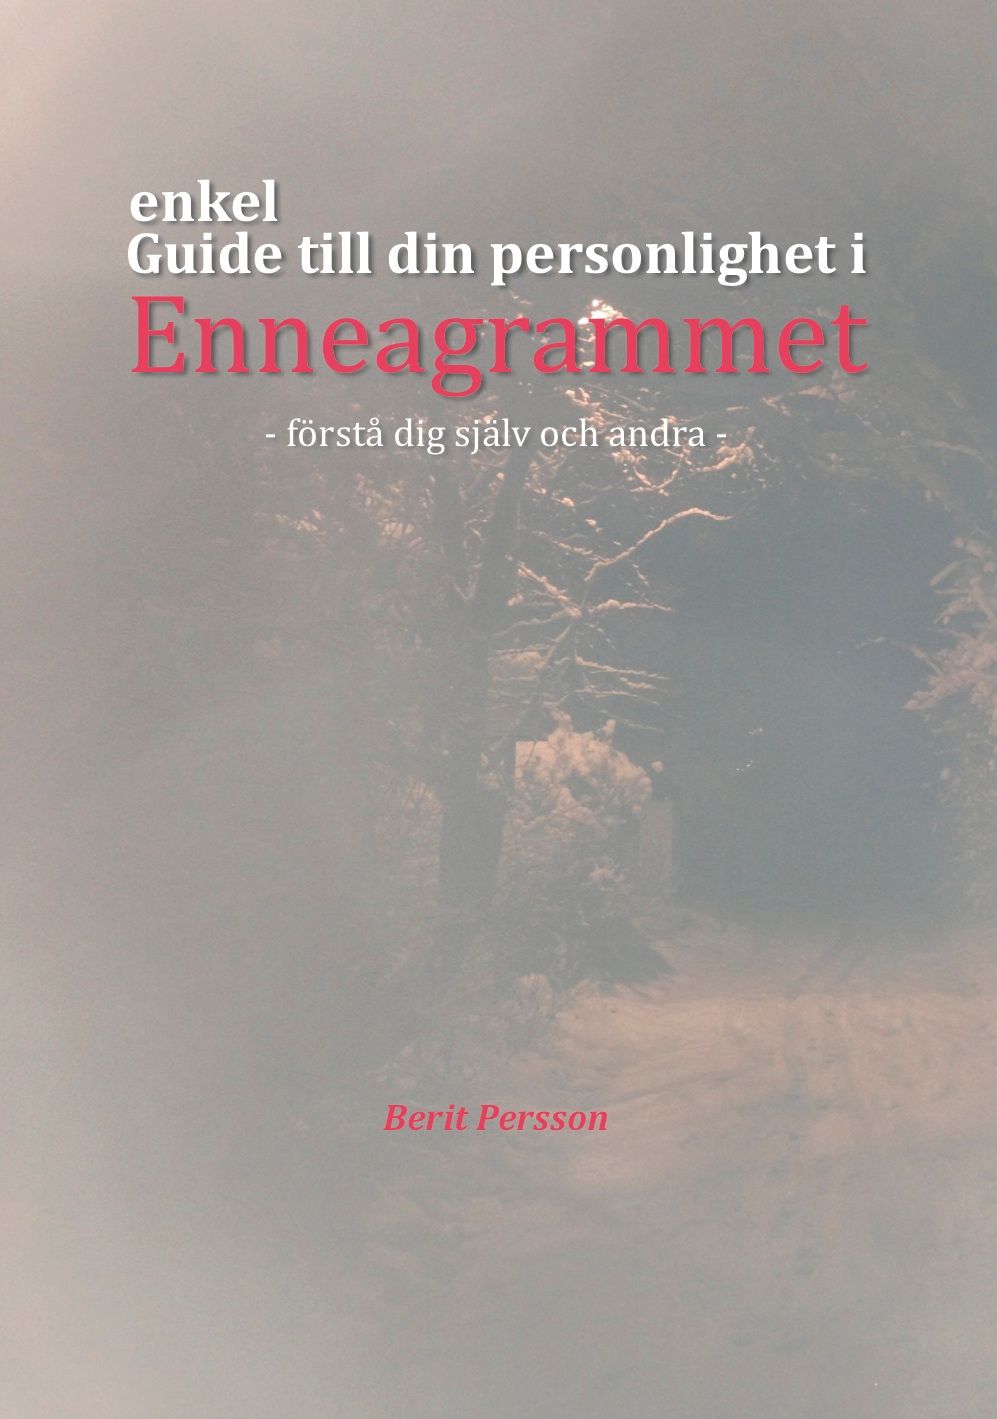 Guide till din personlighet i Enneagrammet, e-bog af Berit Peersson